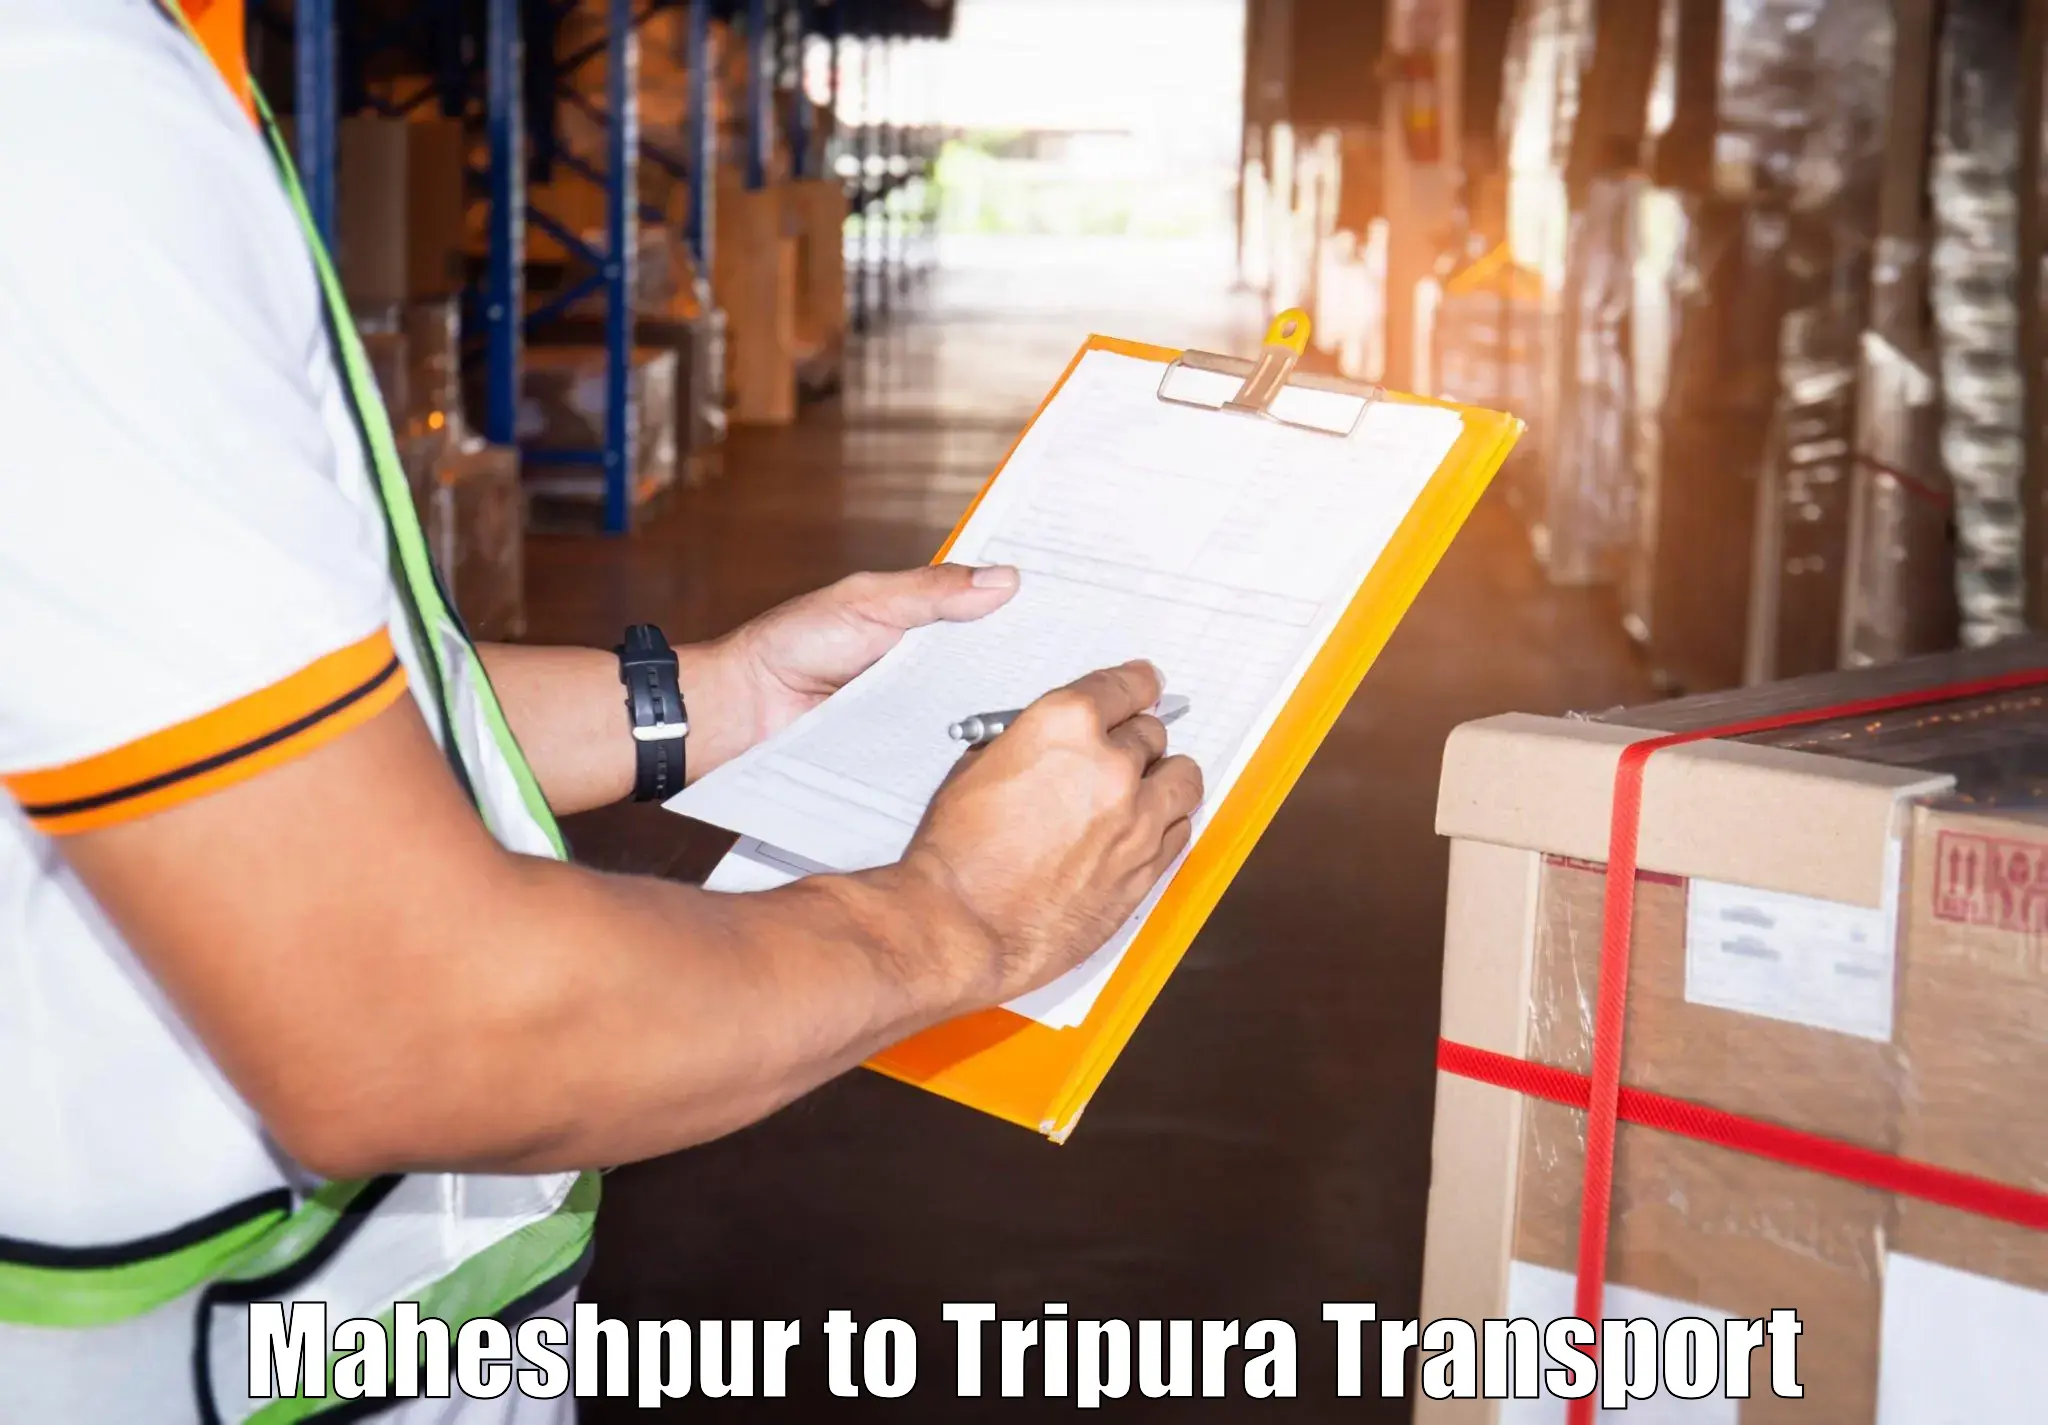 Nearby transport service Maheshpur to IIIT Agartala